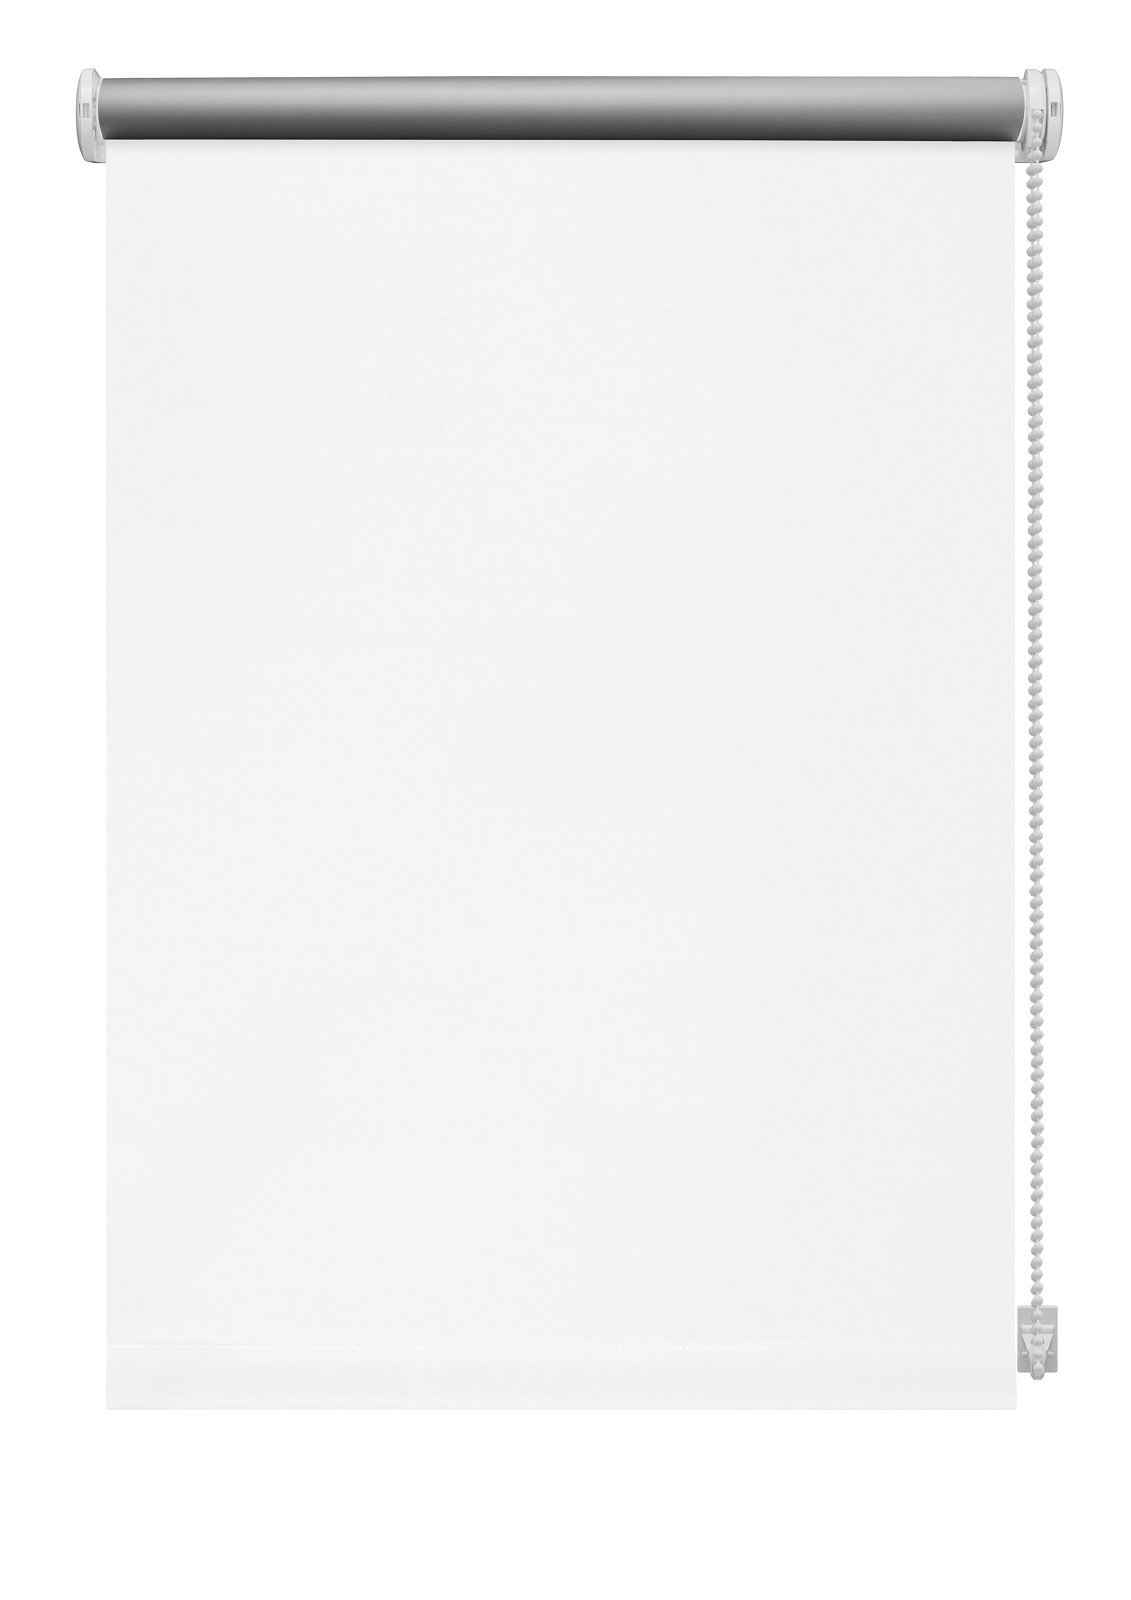 Klasikinė ritininė užuolaida THERMO 905, baltos sp., 160 x 210 cm - 2